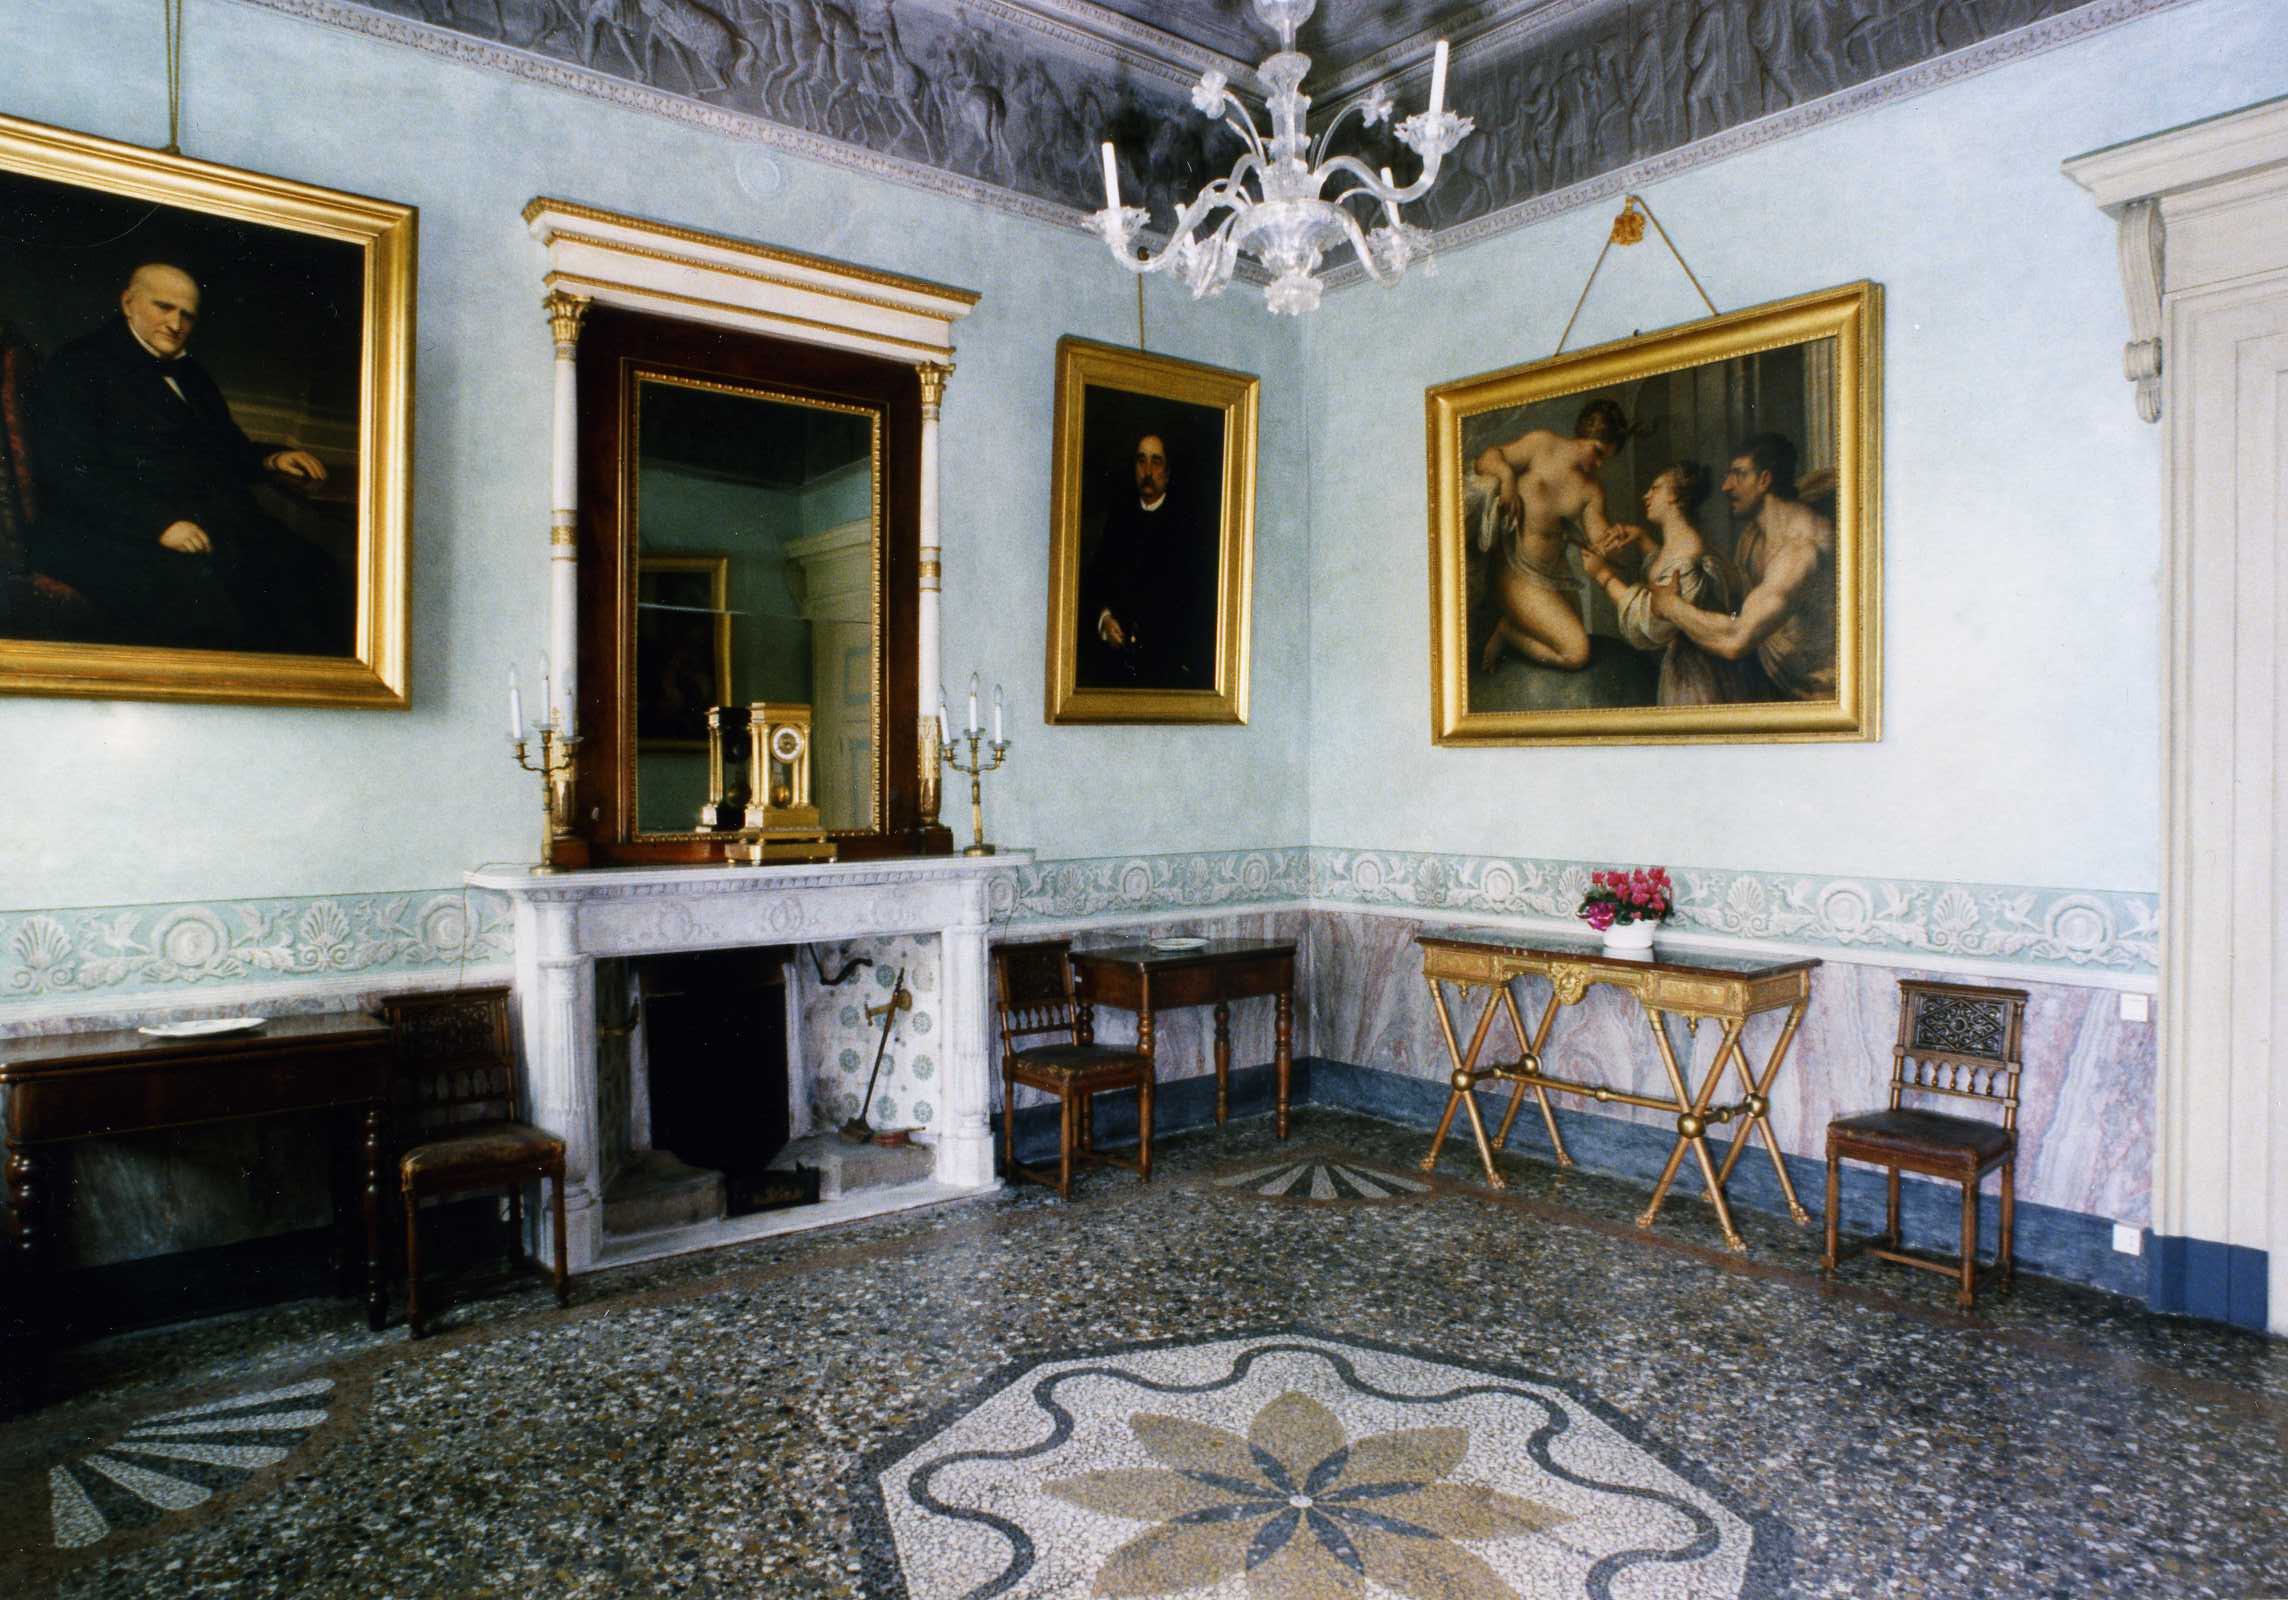 Palazzo Agliardi sala neoclassica6